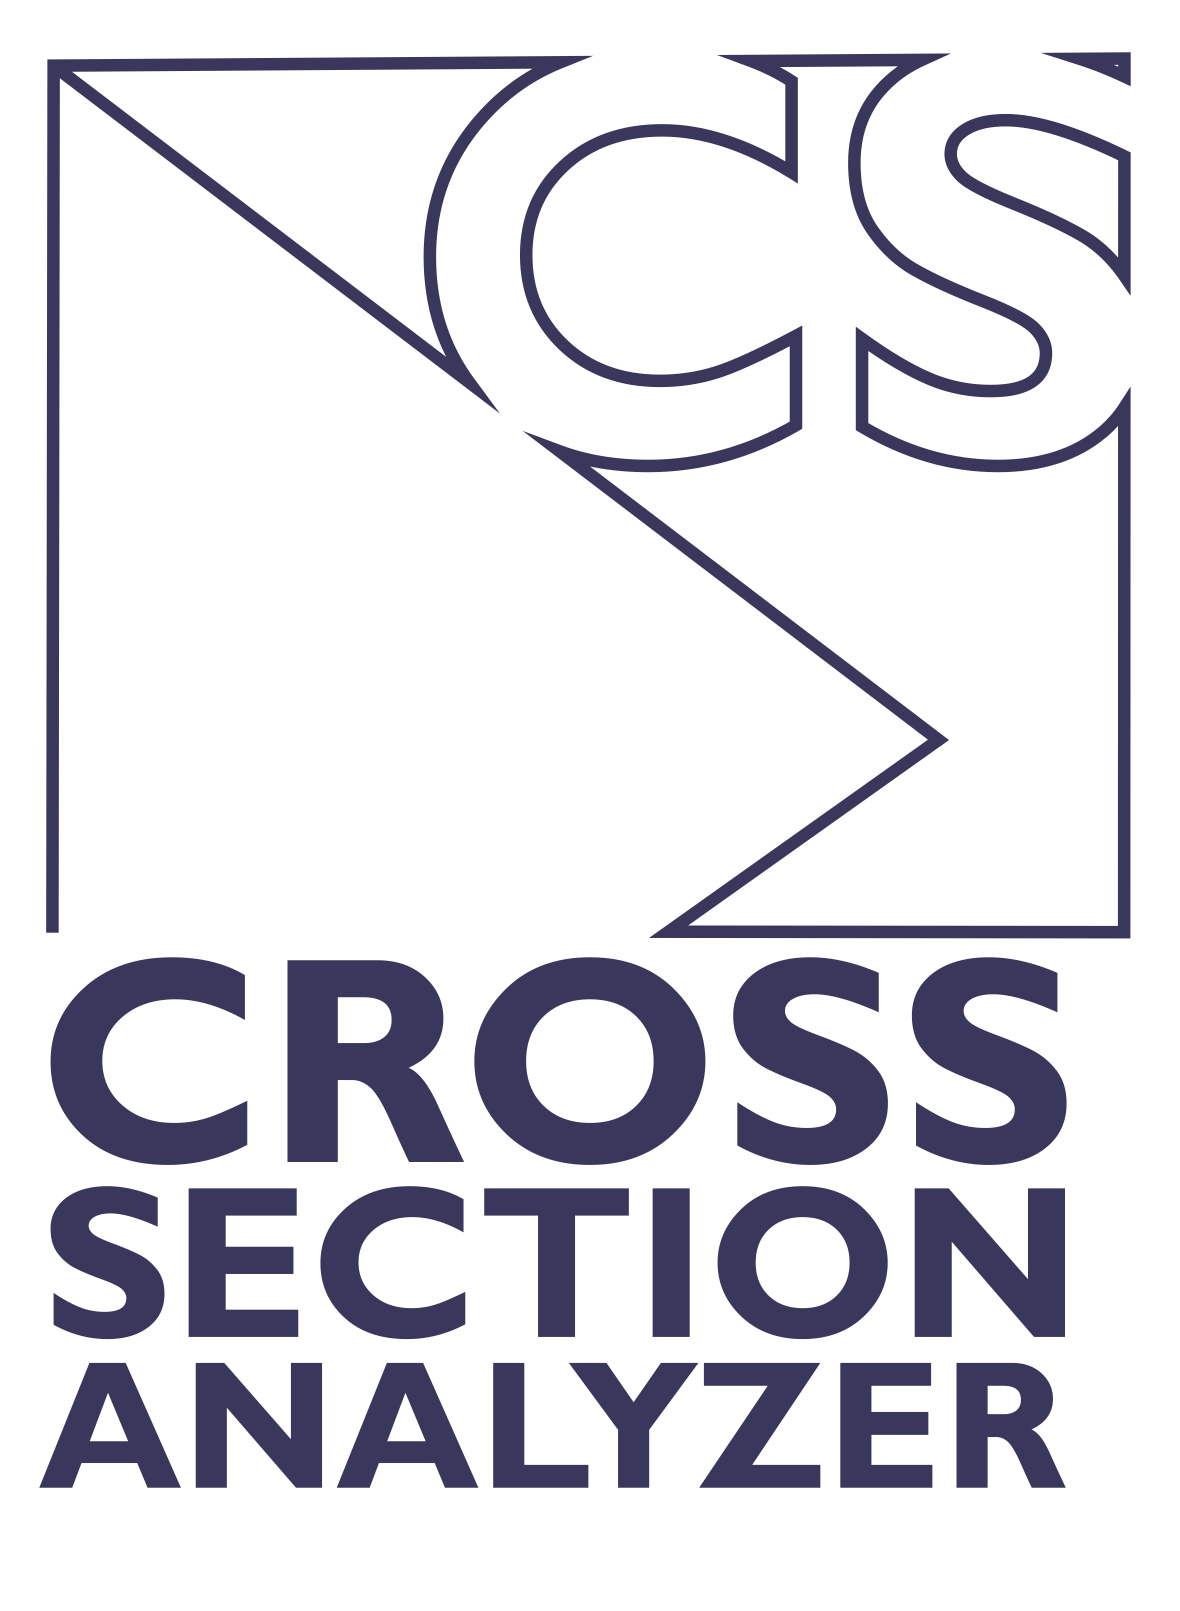 Cross Section Analyzer